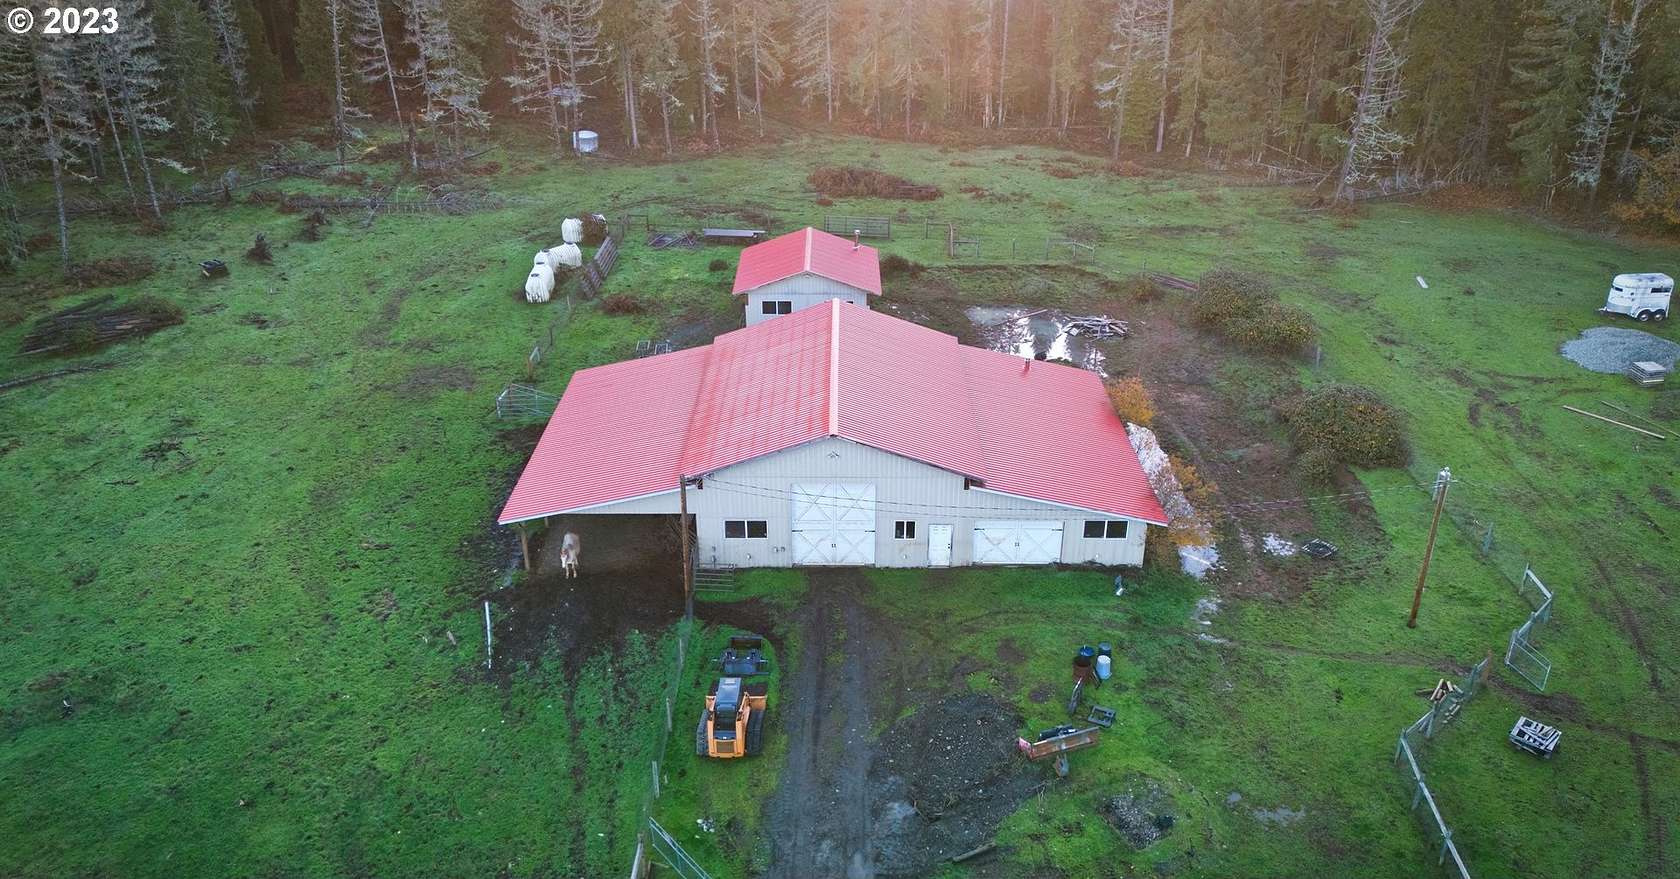 40 Acres of Land for Sale in Tiller, Oregon